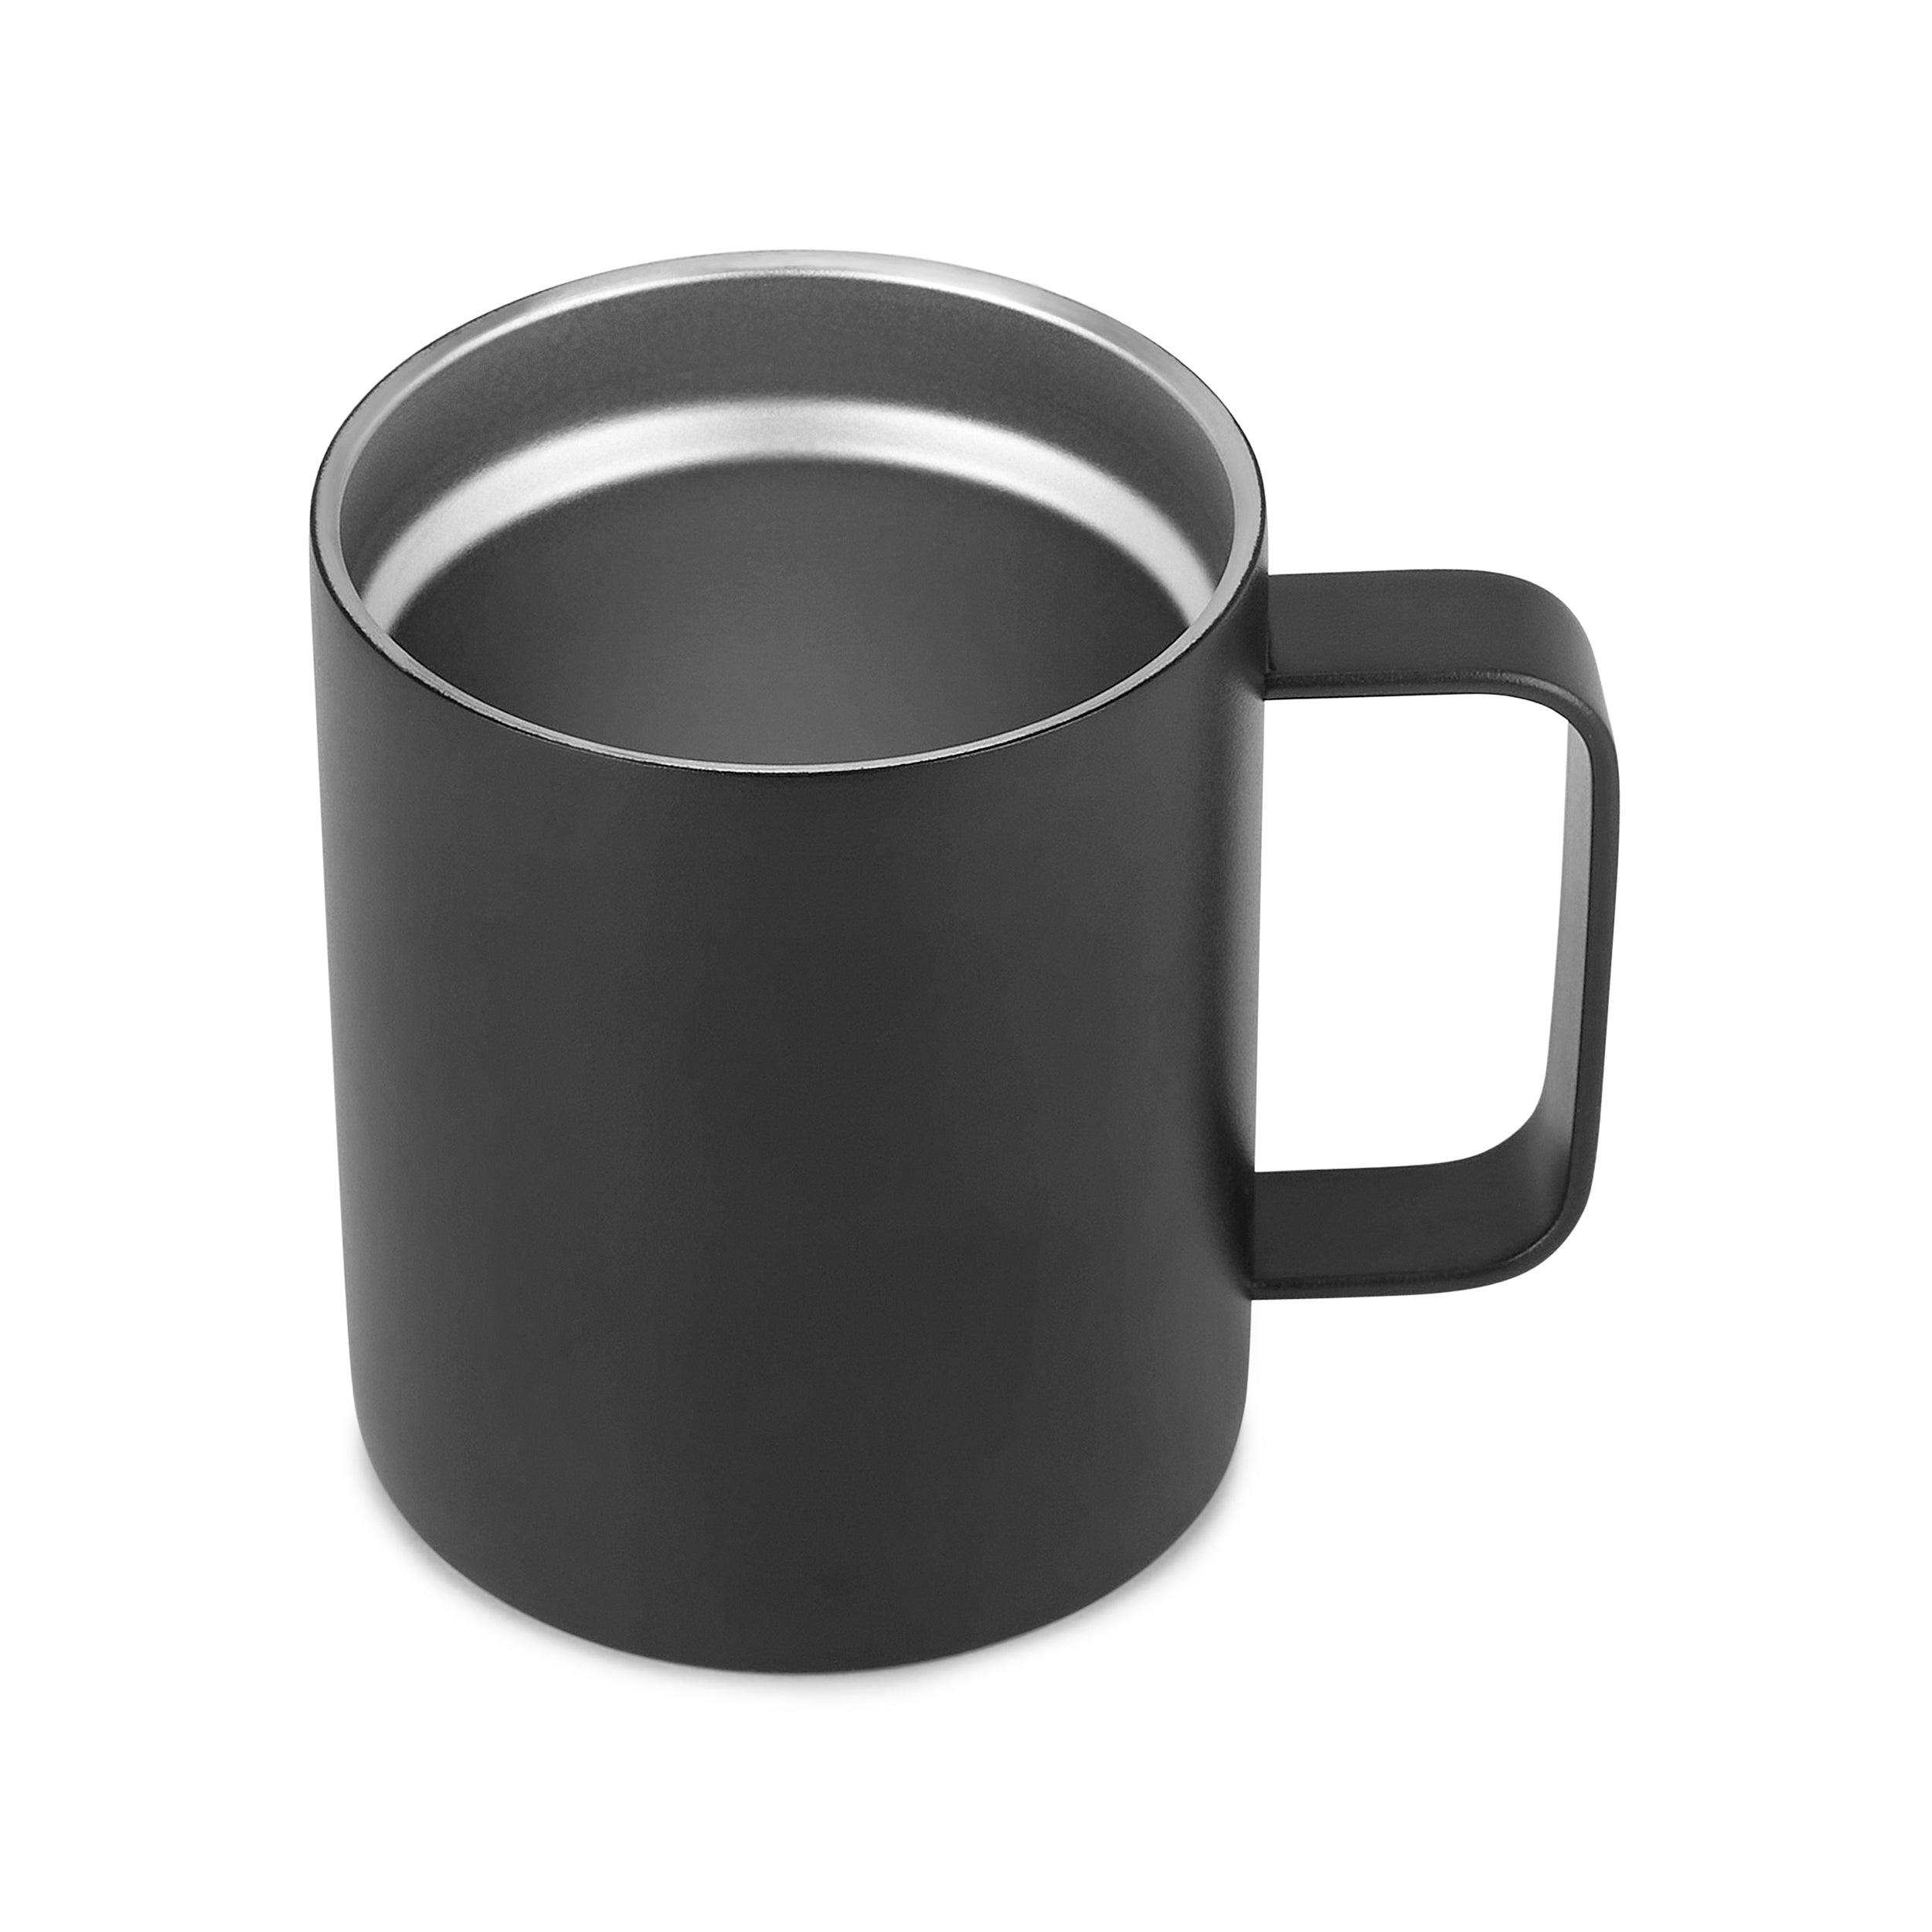 12oz Coffee Mug for Family